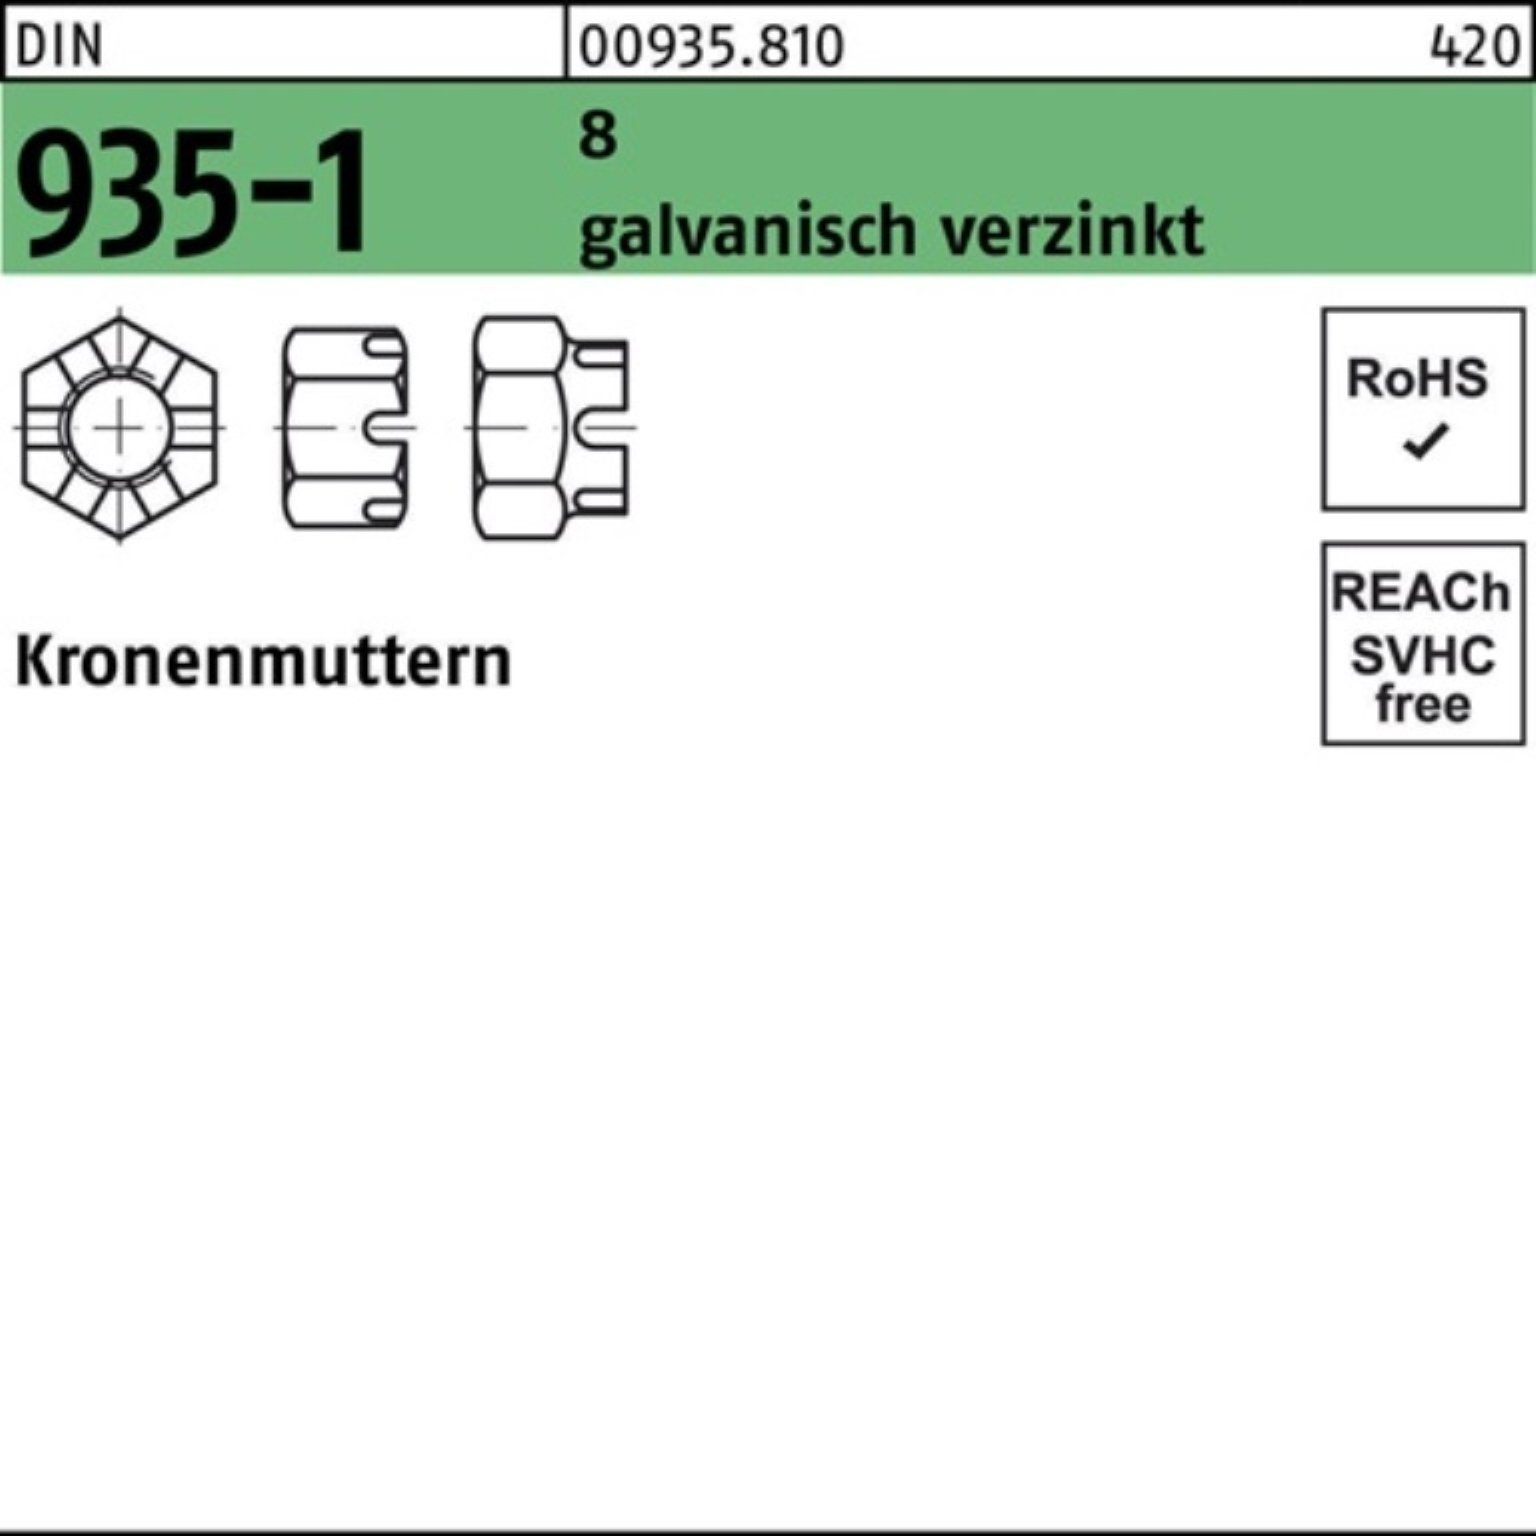 Reyher Kronenmutter 100er 935-1 galv.verz. M24 DIN 935-1 DIN 8 Pack Kronenmutter 25 Stück